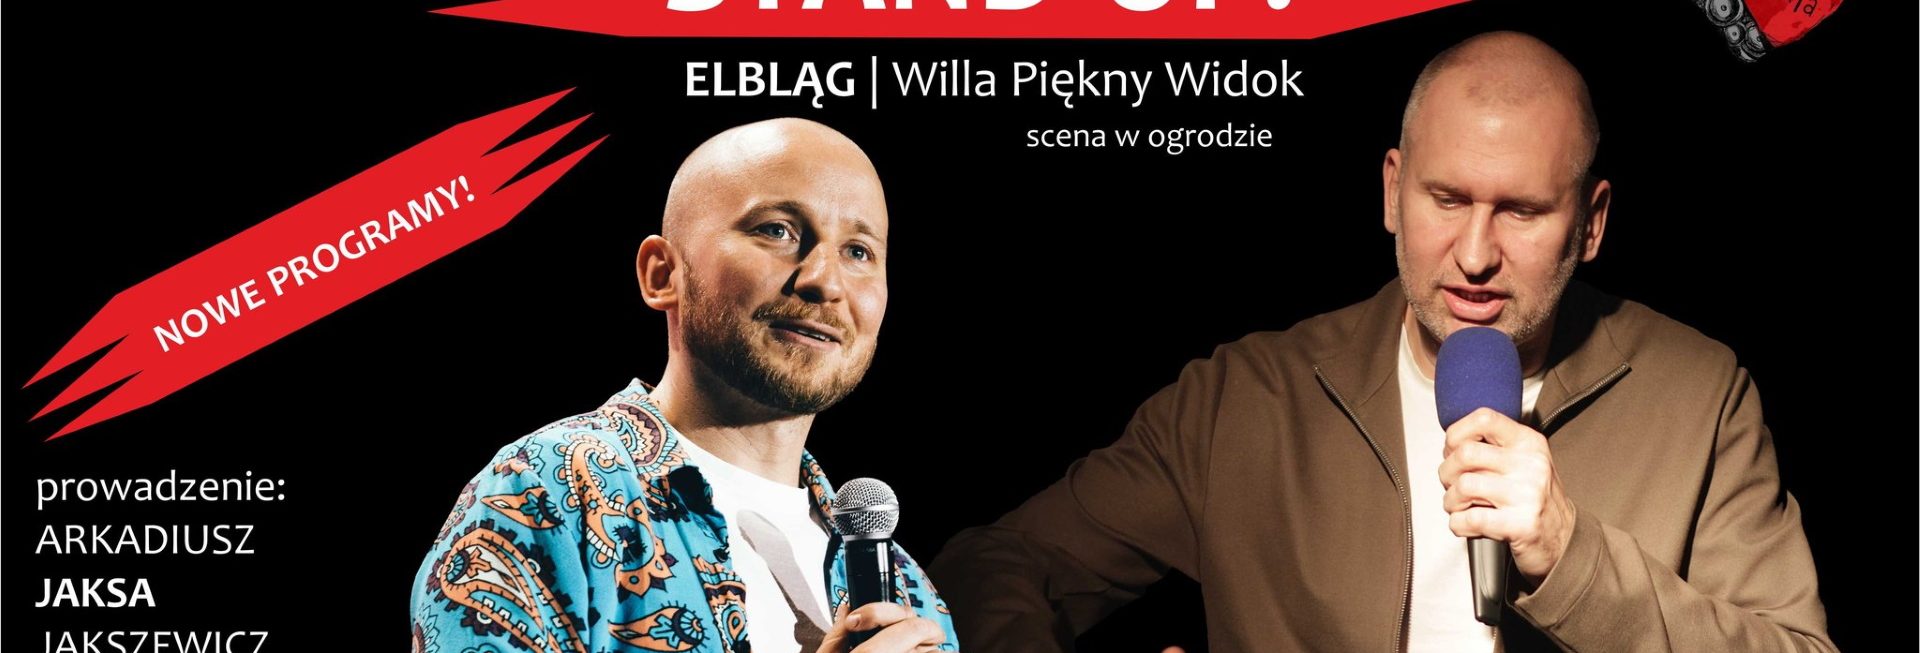 Plakat graficzny zapraszający do Elbląga na Stand-up Wojtek FIEDORCZUK & Damian SKÓRA Elbląg 2022.